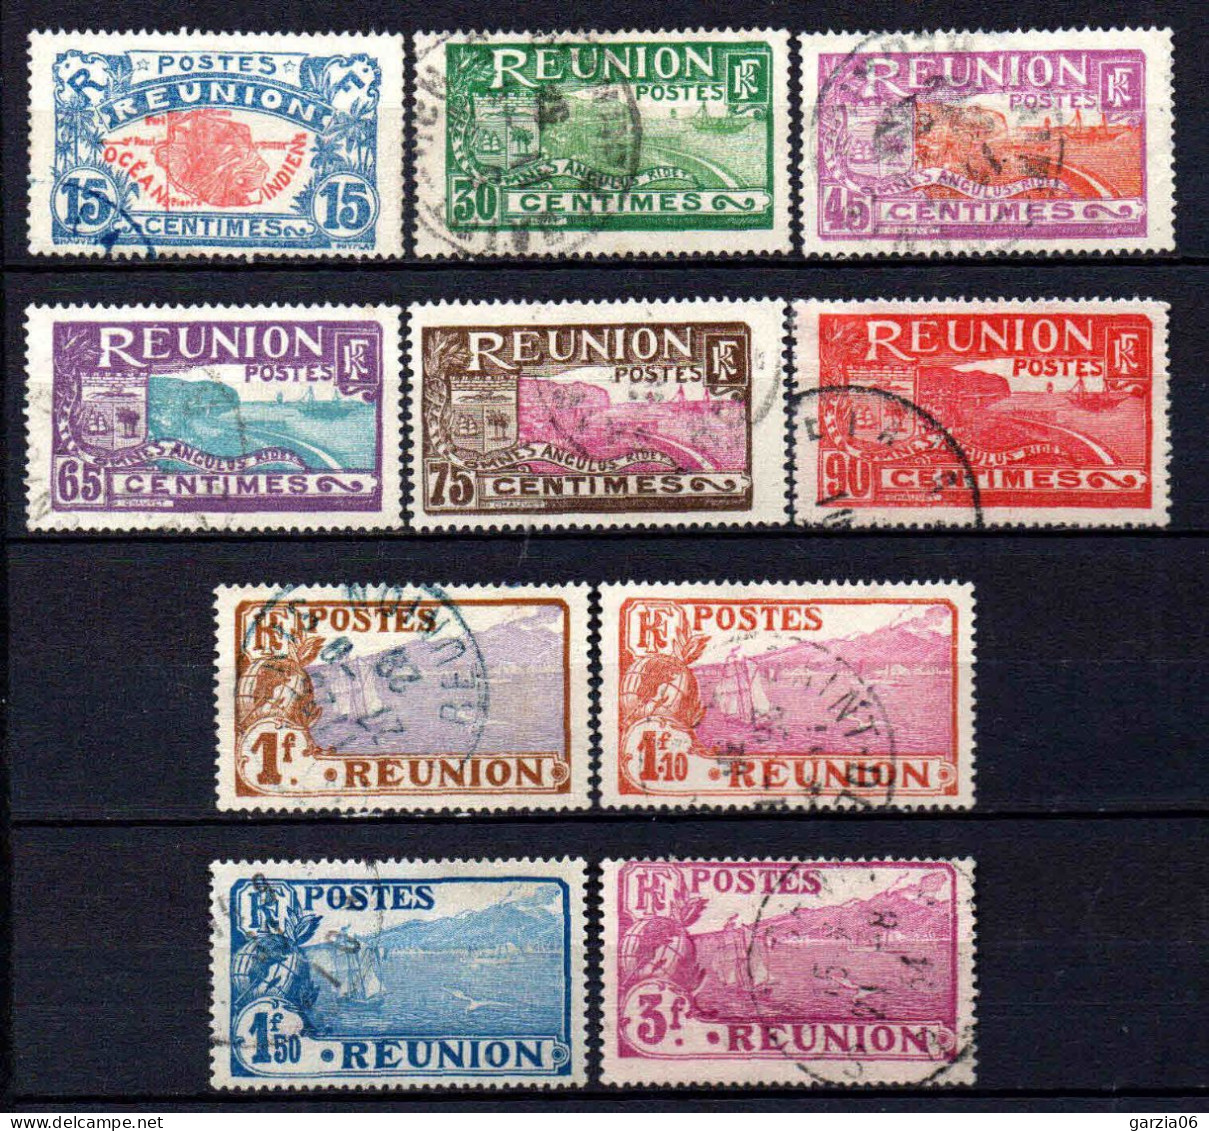 Réunion - 1928 -  Nouvelles Valeurs - N° 109 à 118  - Oblit - Used - Used Stamps